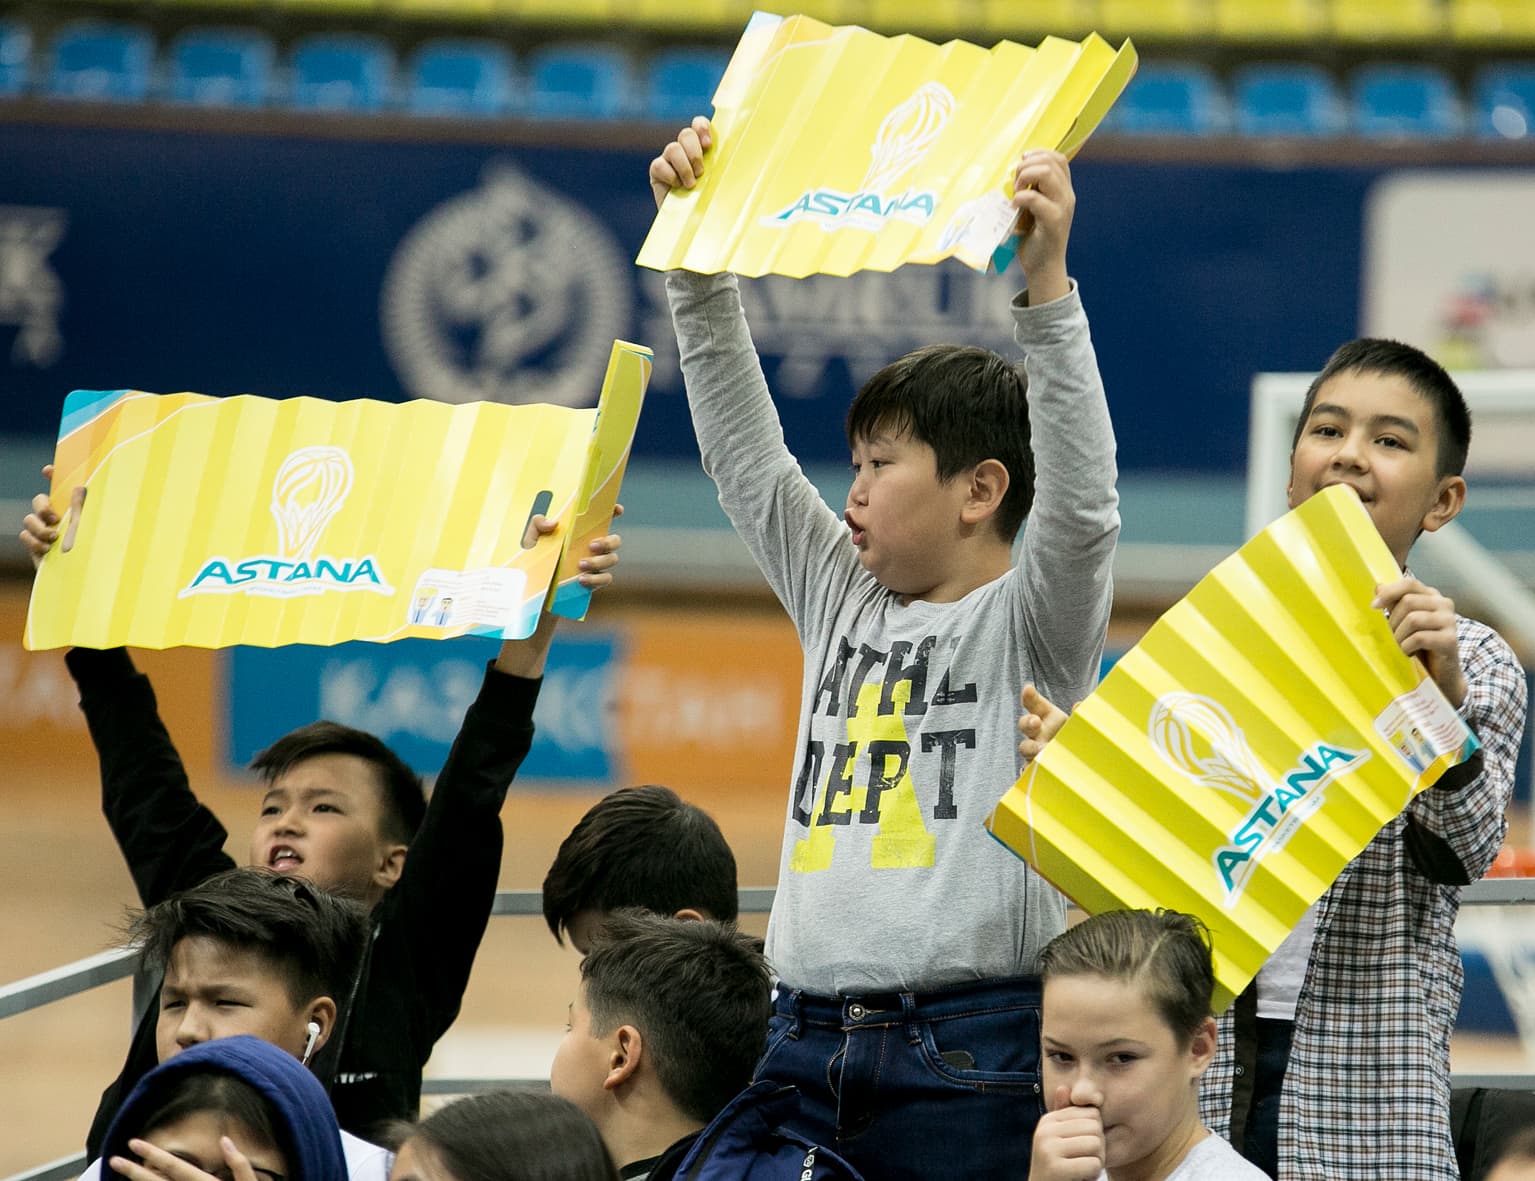 Astana vs. CSKA Highlights